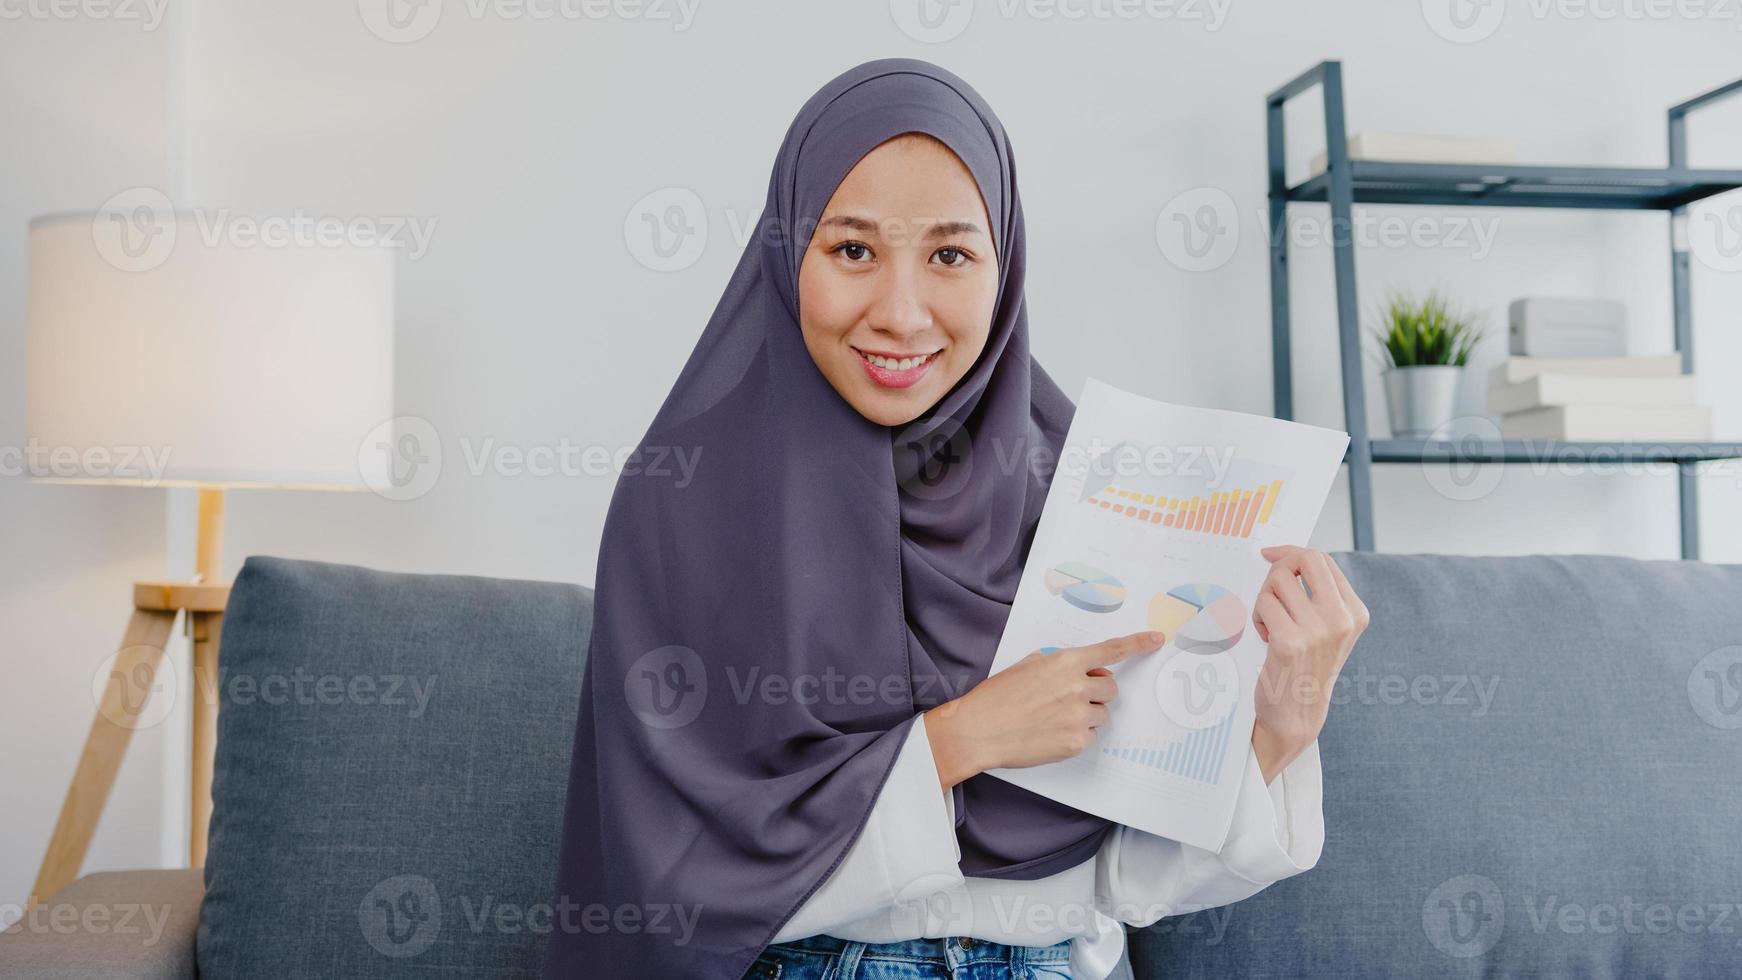 azië moslimdame draagt hijab gebruik computerlaptop praat met collega's over verkooprapport in videogesprekvergadering terwijl ze op afstand vanuit huis in de woonkamer werkt. sociale afstand, quarantaine voor het coronavirus. foto